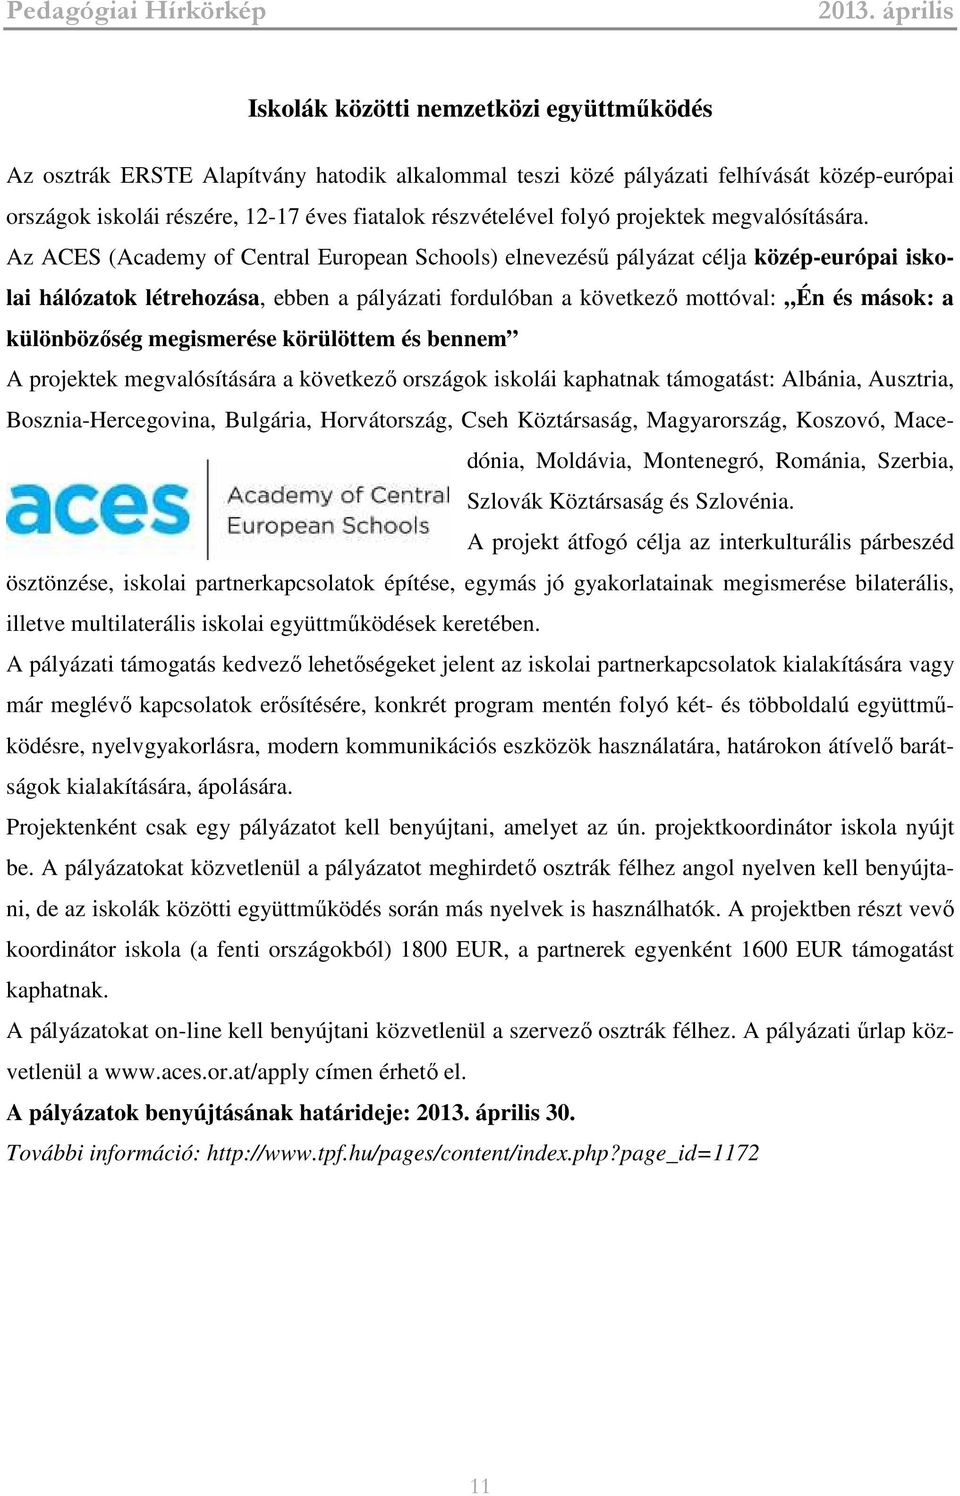 Az ACES (Academy of Central European Schools) elnevezésű pályázat célja közép-európai iskolai hálózatok létrehozása, ebben a pályázati fordulóban a következő mottóval: Én és mások: a különbözőség